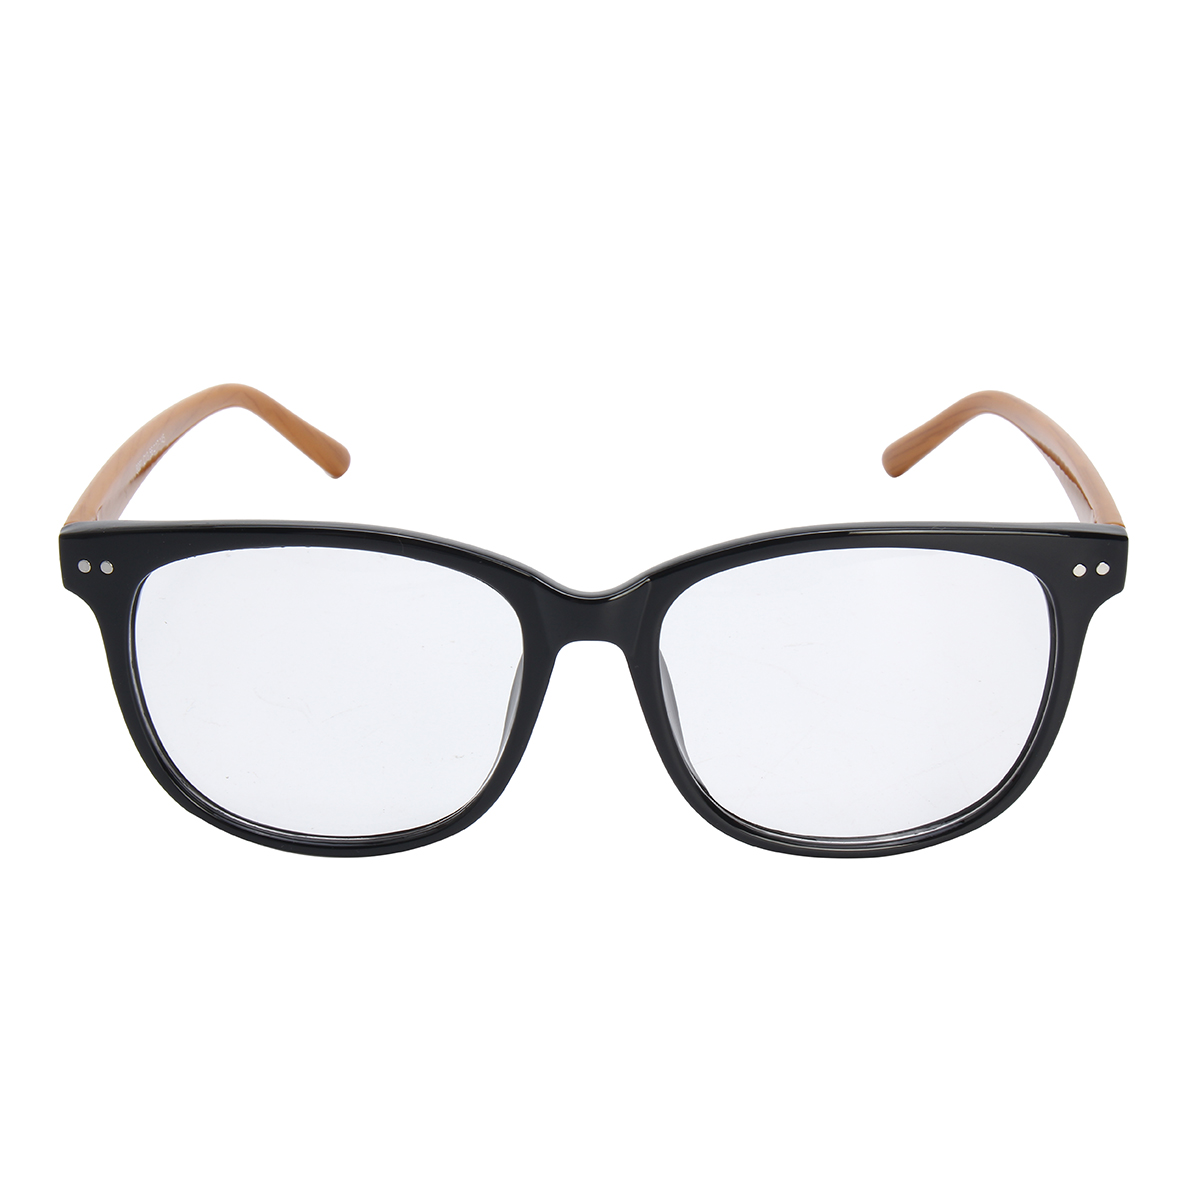 

Fashion Spectacles Eyeglasses Full Rim Frames Men Women Optical Eyewear Glasses